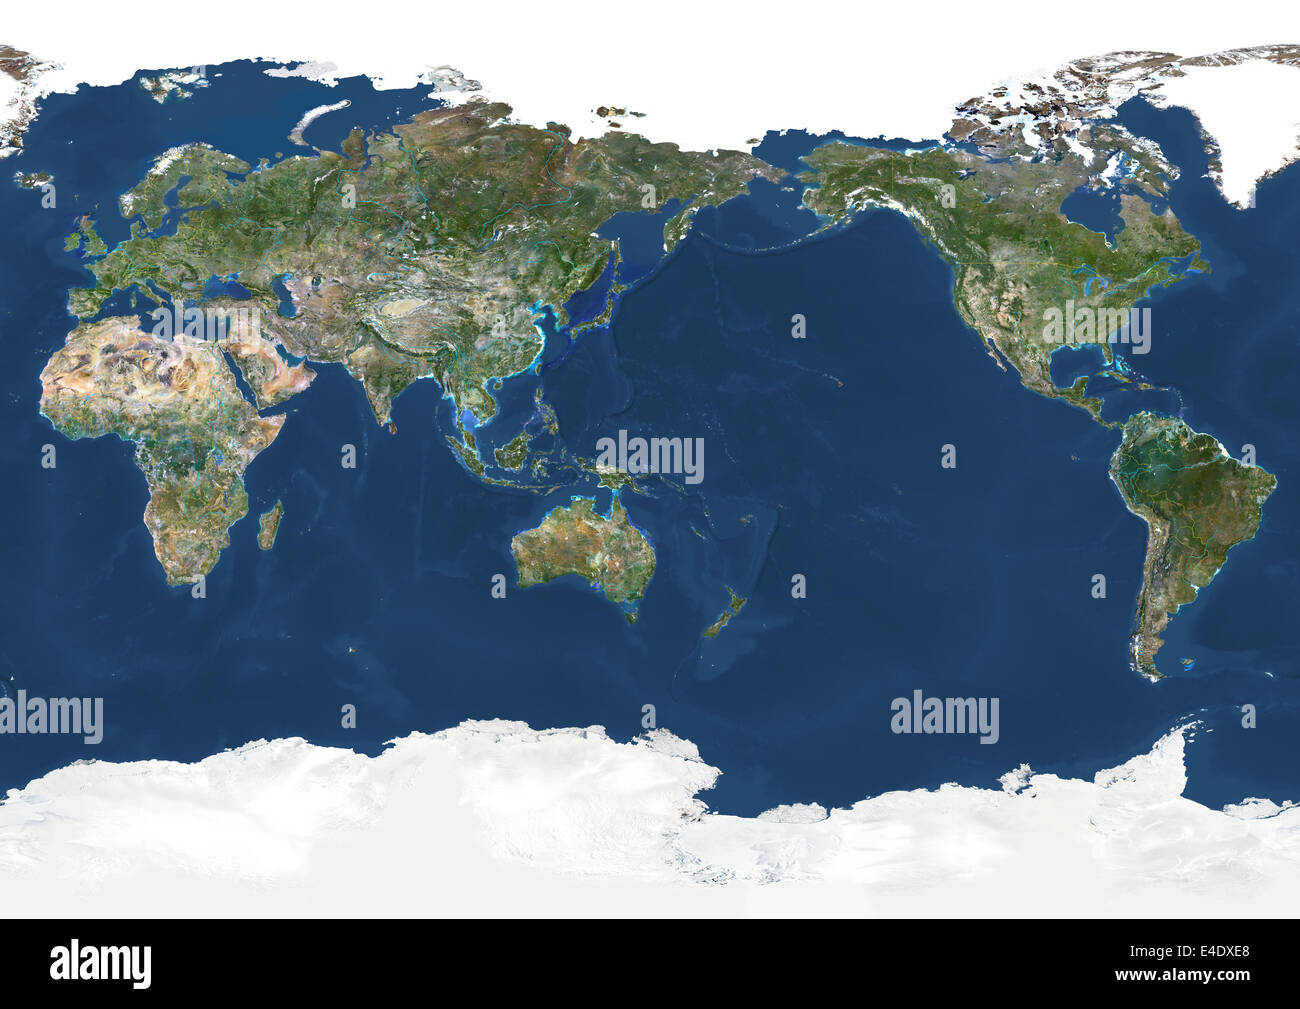 Terra tutta centrata sull'Oceano Pacifico, True Color immagine satellitare. True color Immagine satellitare della terra tutta centrata sul Foto Stock